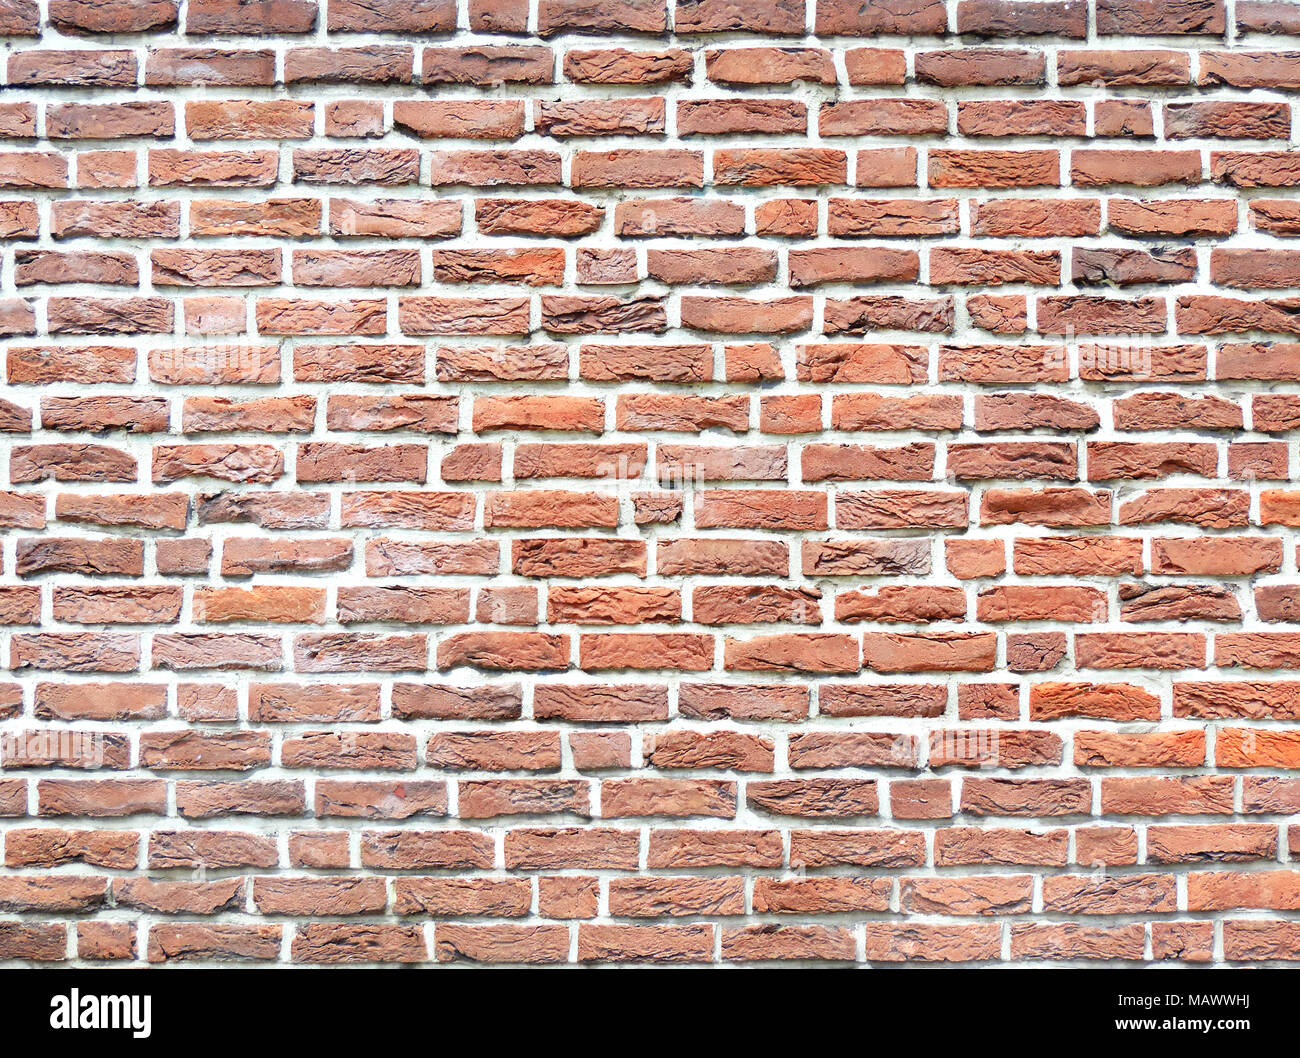 Muro de Piedra de ladrillo, con textura de fondo fondo de piedra. Disparo de fotograma completo de una pared de ladrillo rojo, como telón de fondo. Foto de stock